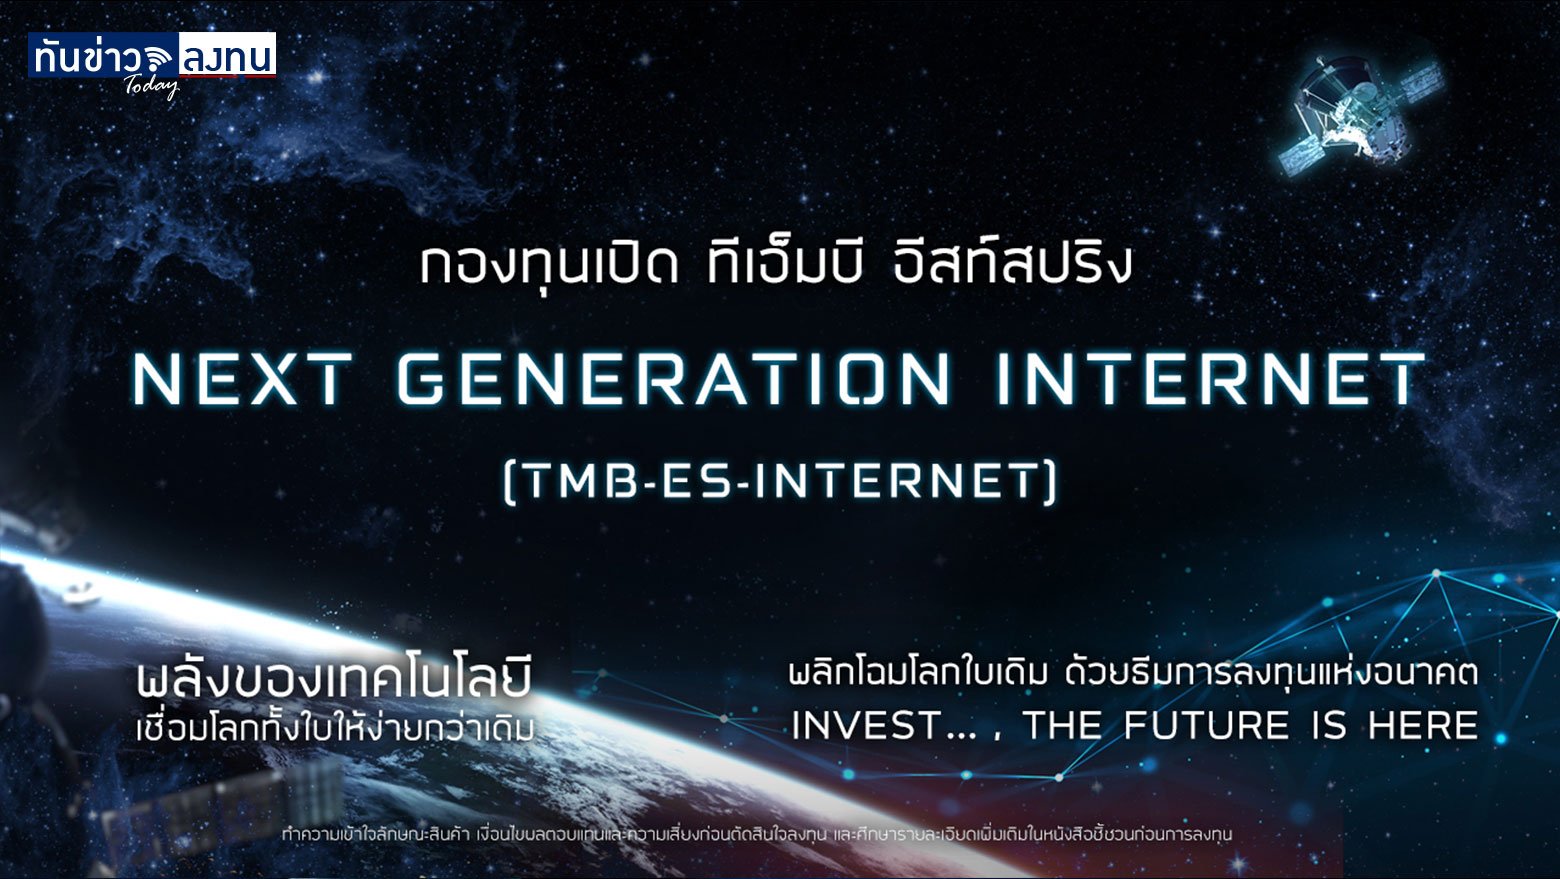 กองทุนเปิด ทีเอ็มบี อีสท์สปริง Next Generation Internet Fund (TMB-ES-INTERNET)